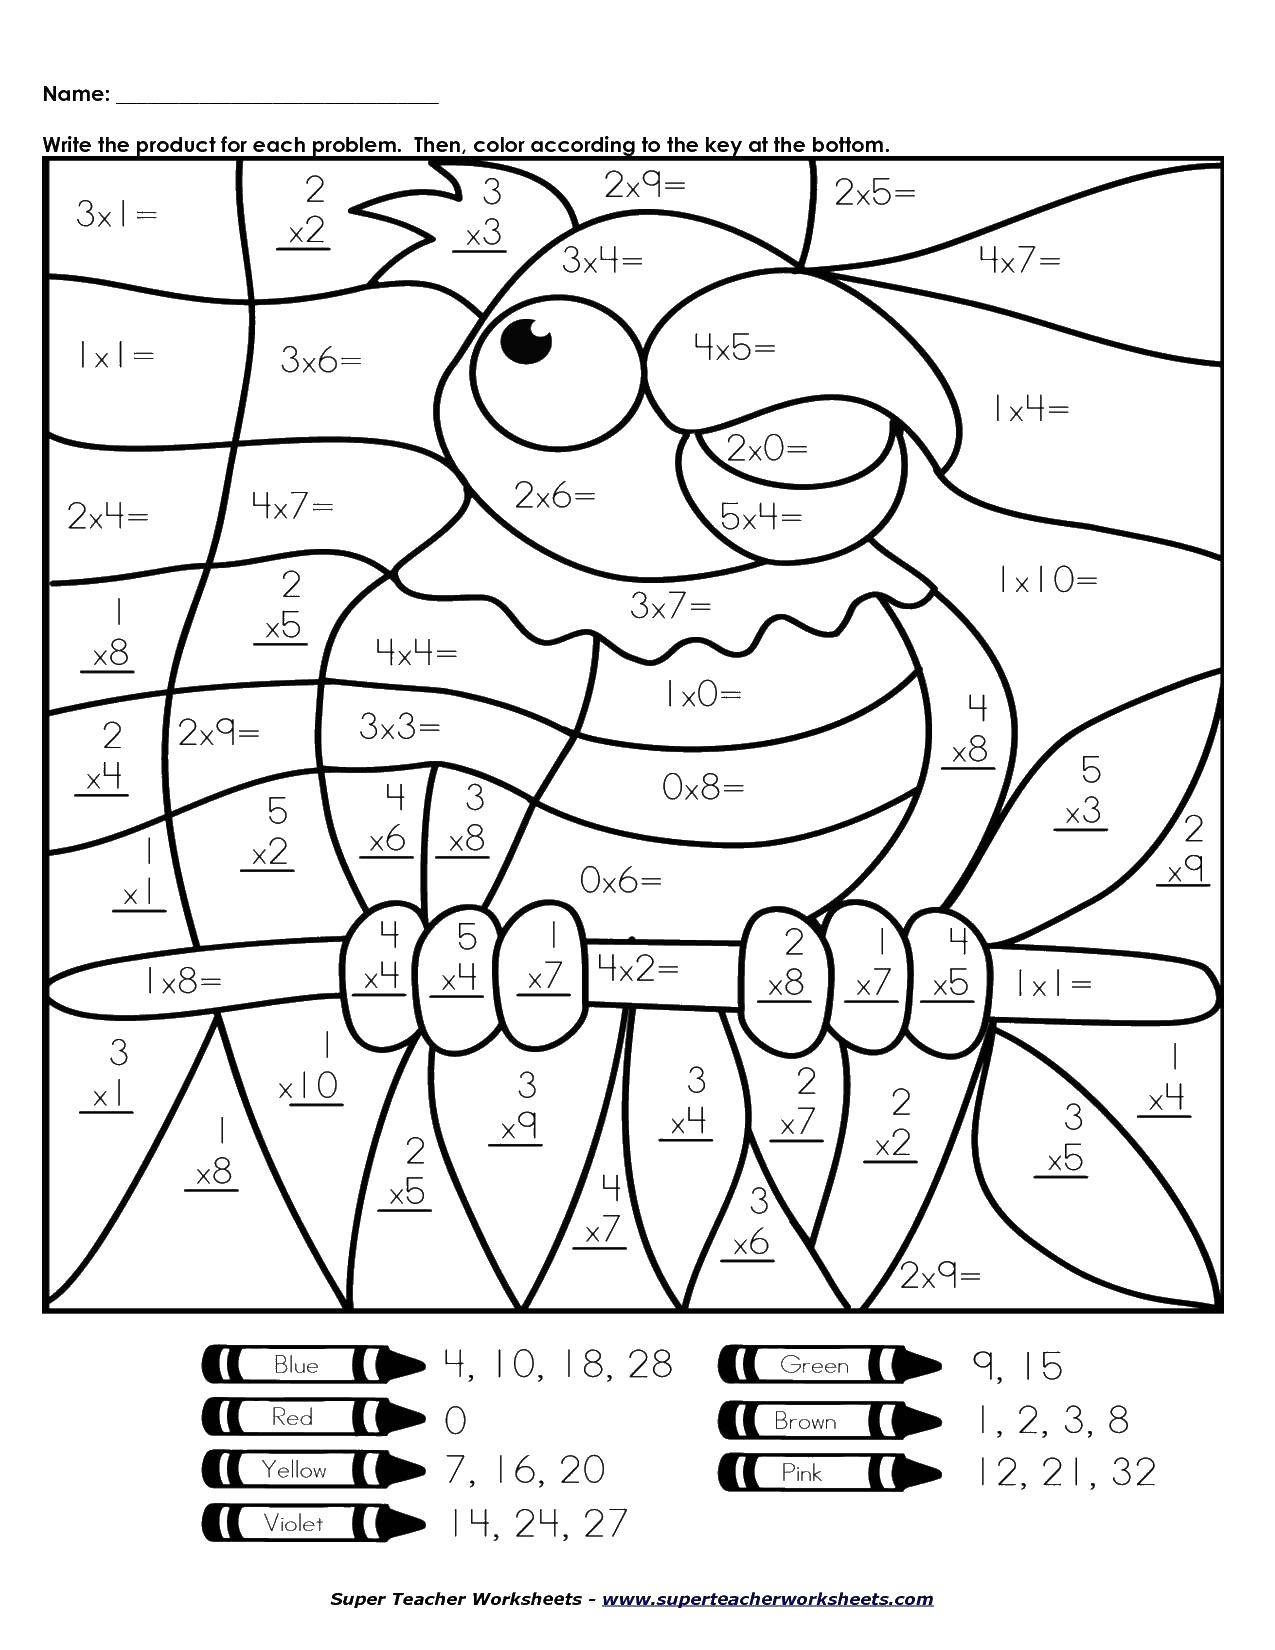 Опис: розмальовки  Розфарбуй папугу вирішивши приклади. Категорія: математичні розмальовки. Теги:  приклади, математика, папуга.